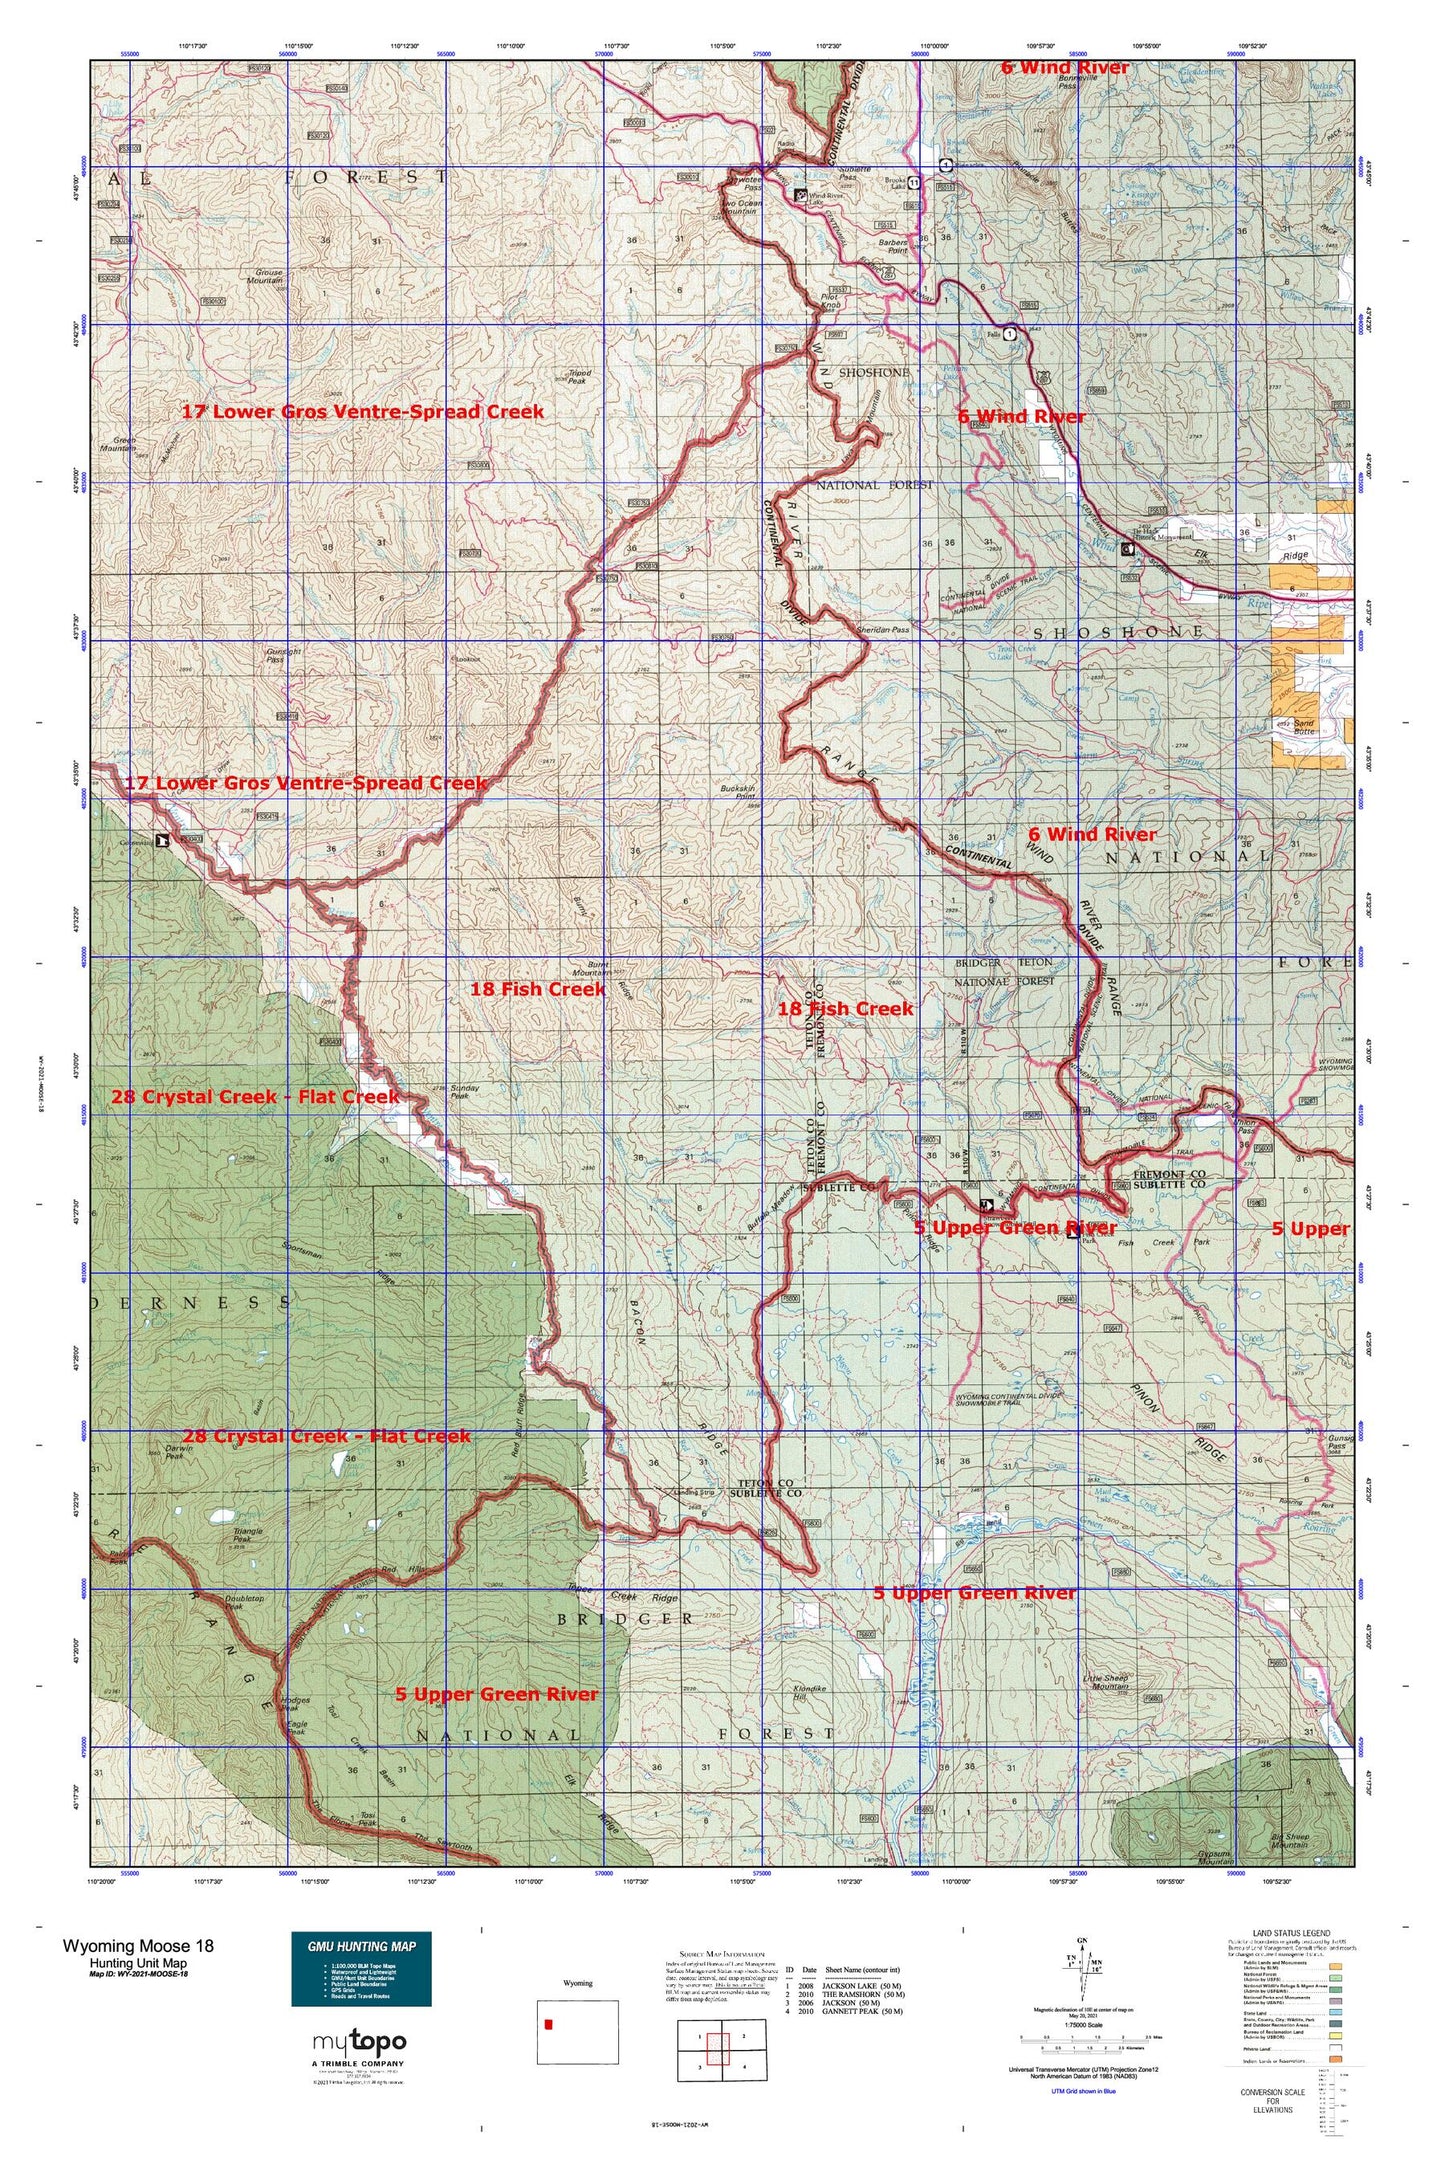 Wyoming Moose 18 Map Image